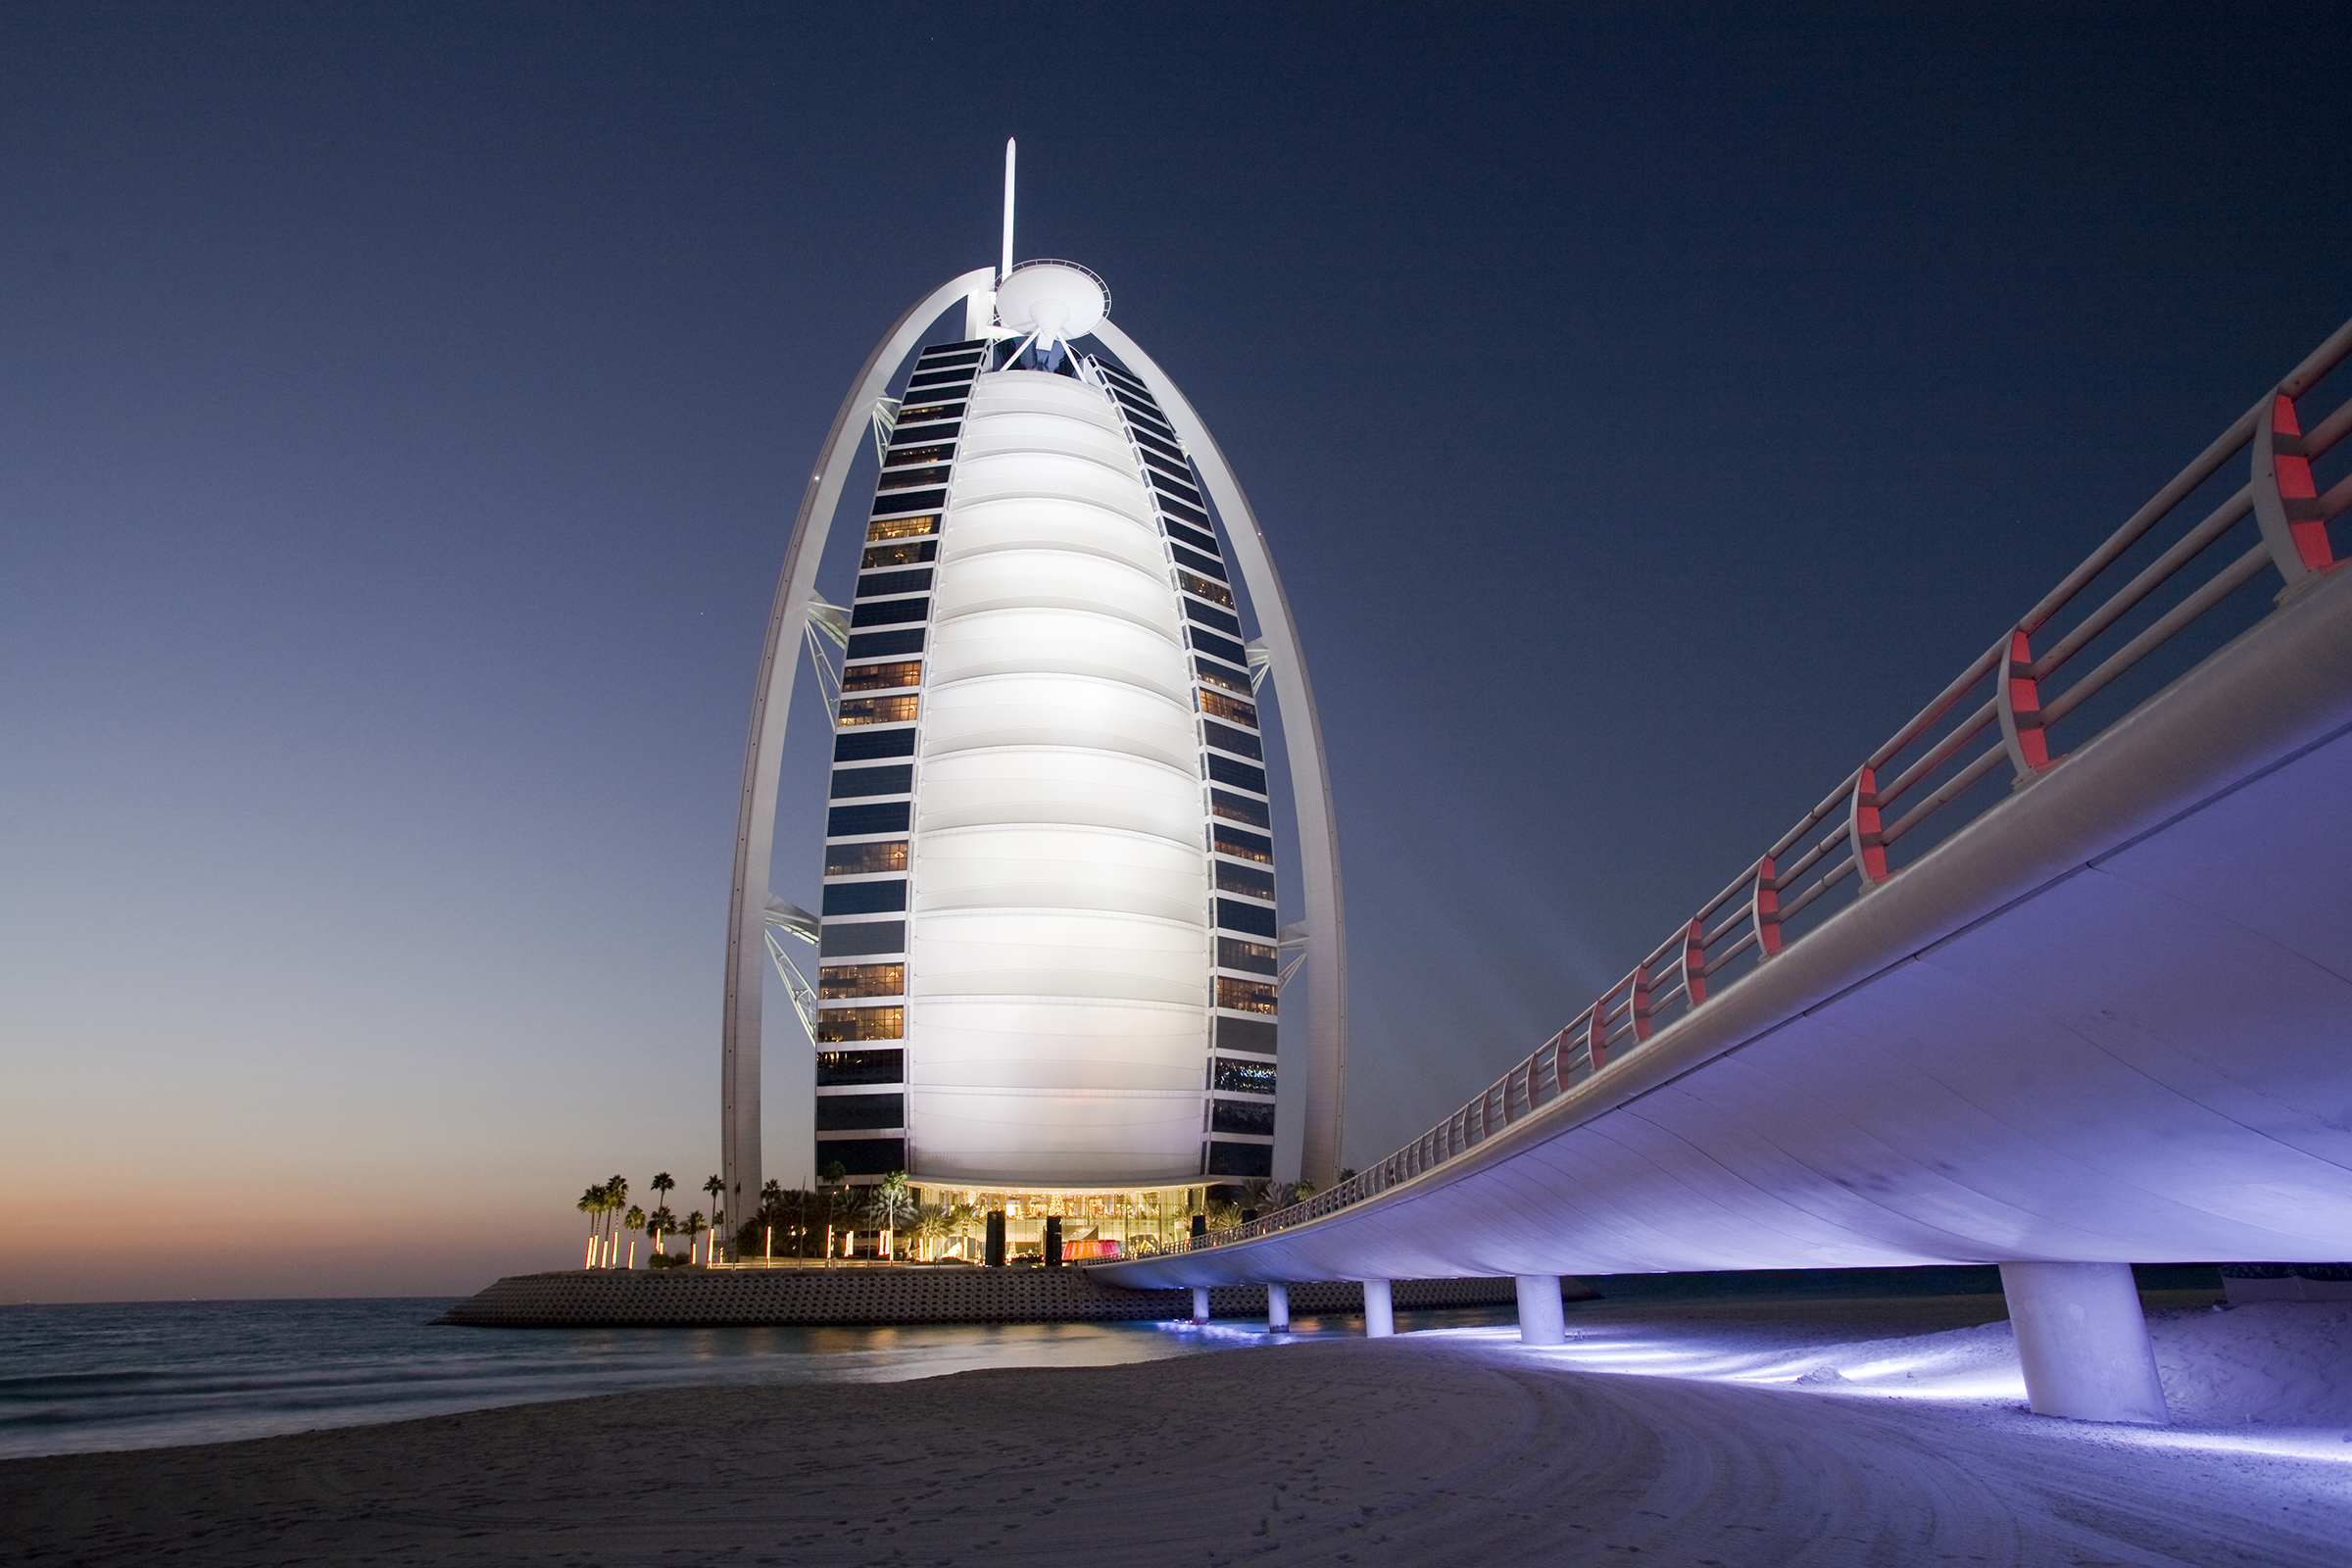 Day 2 The Futuristic Present in Modern Dubai